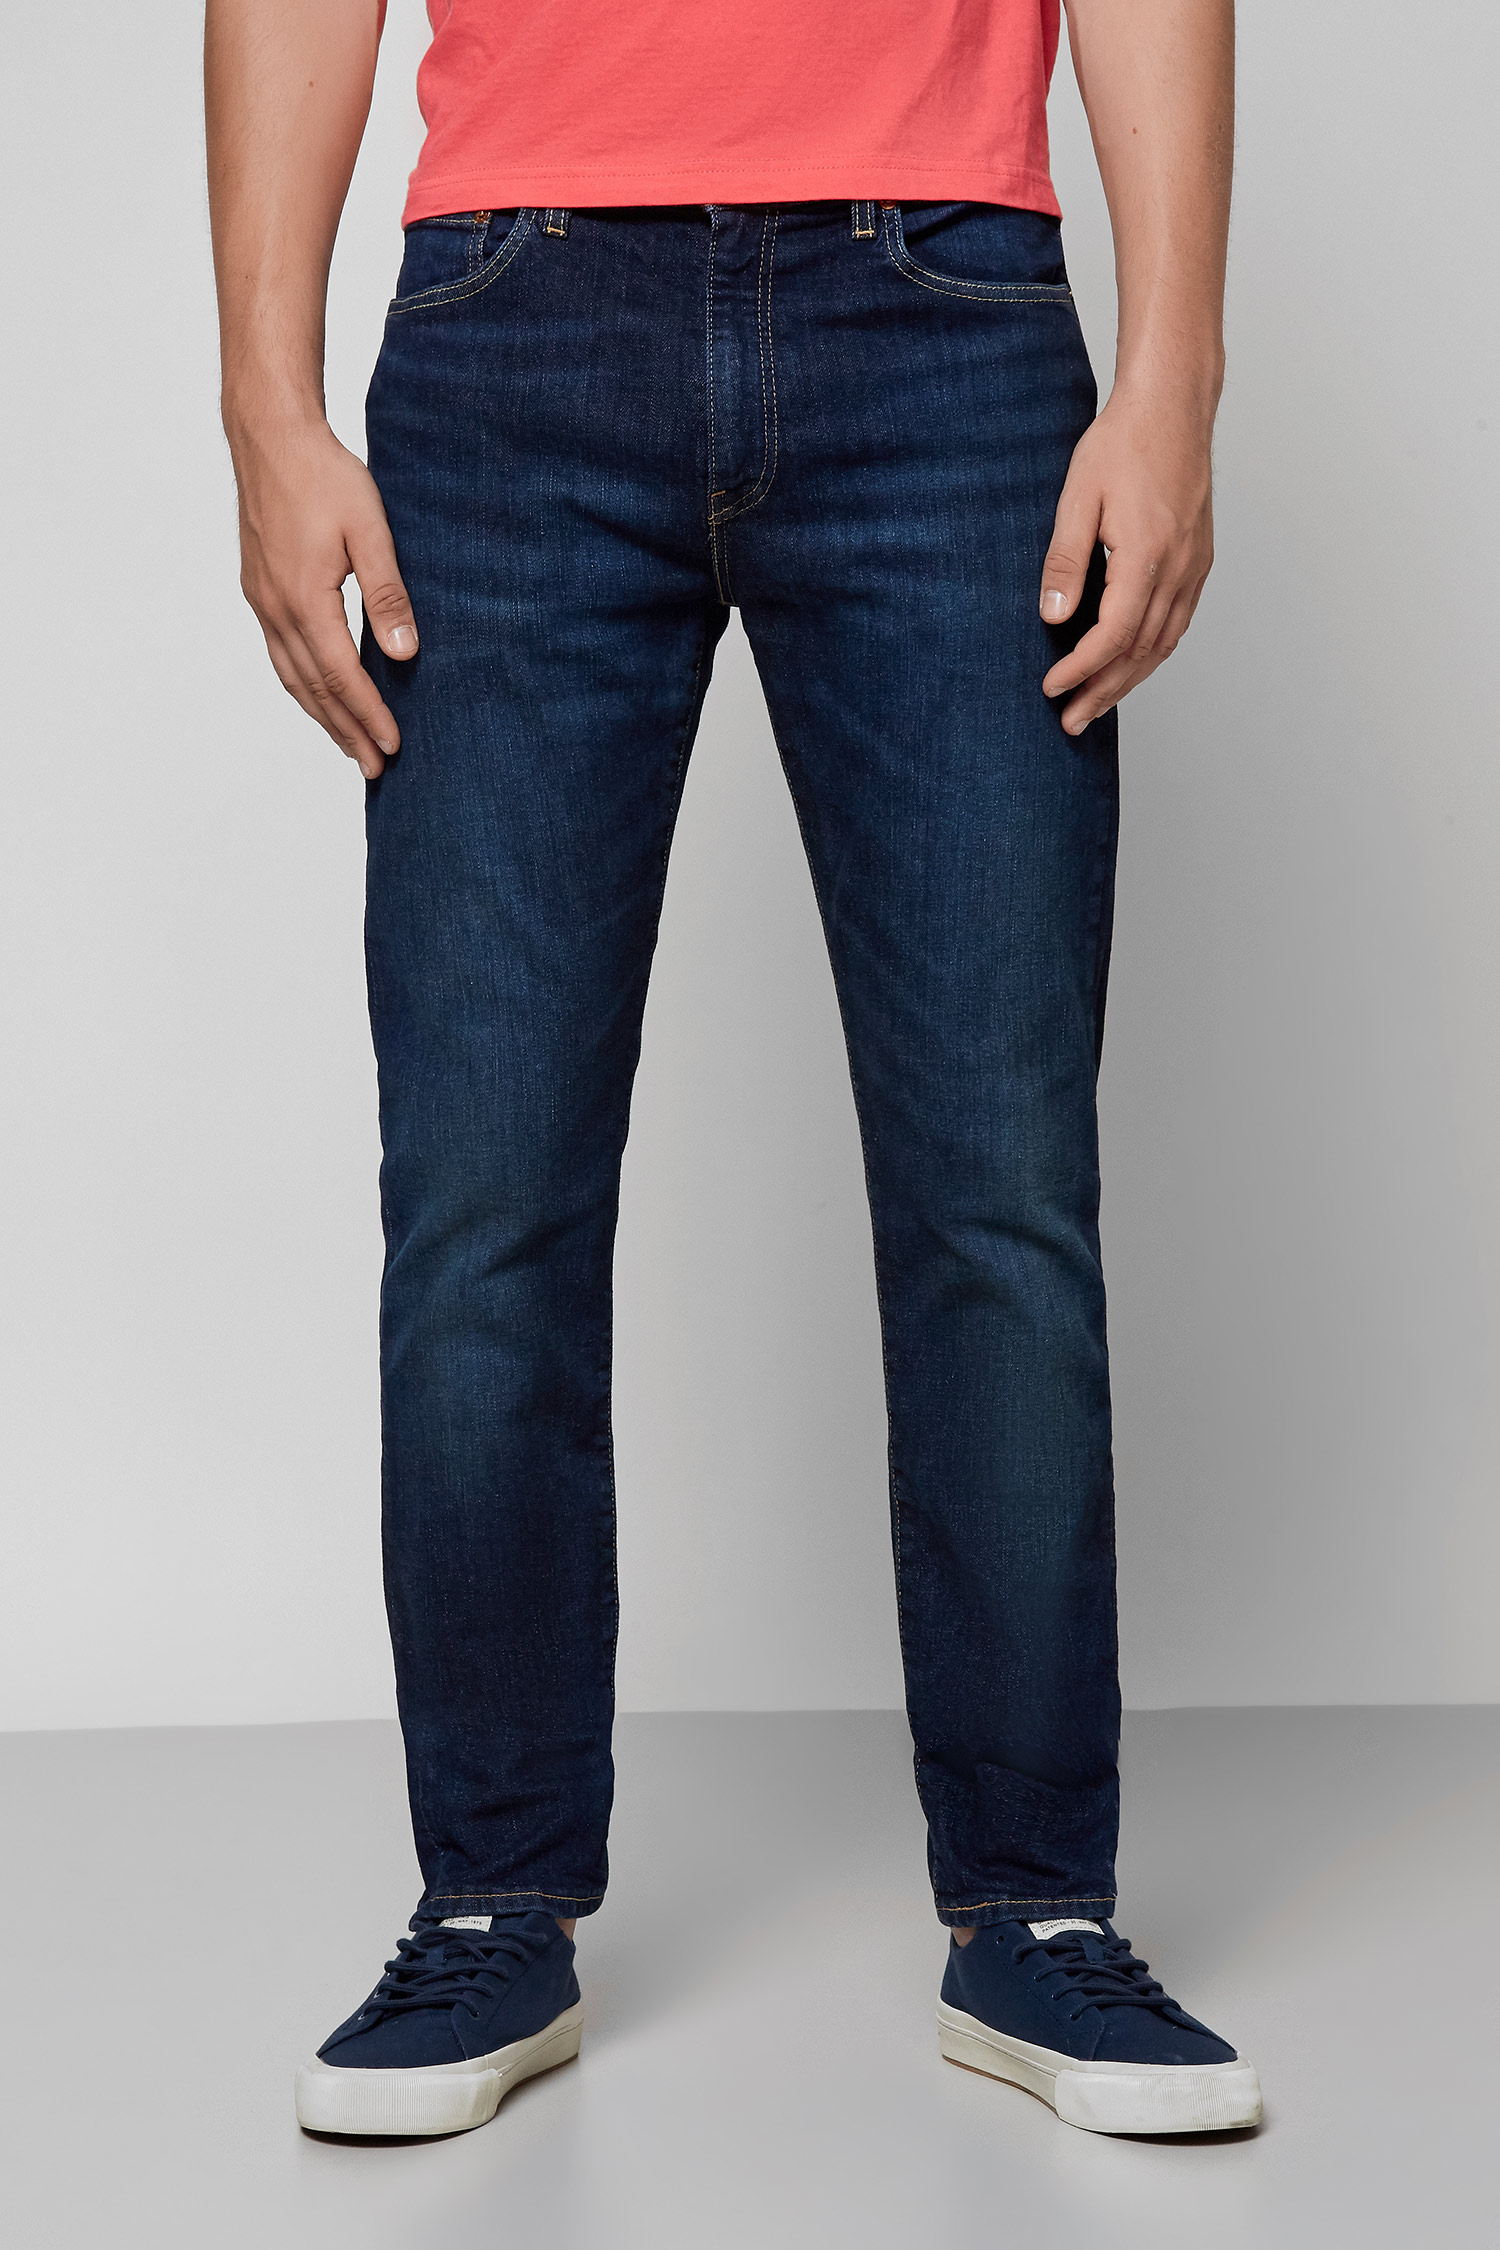 Темно-синие джинсы 512™ Slim Taper для парней Levi’s® 28833;0633